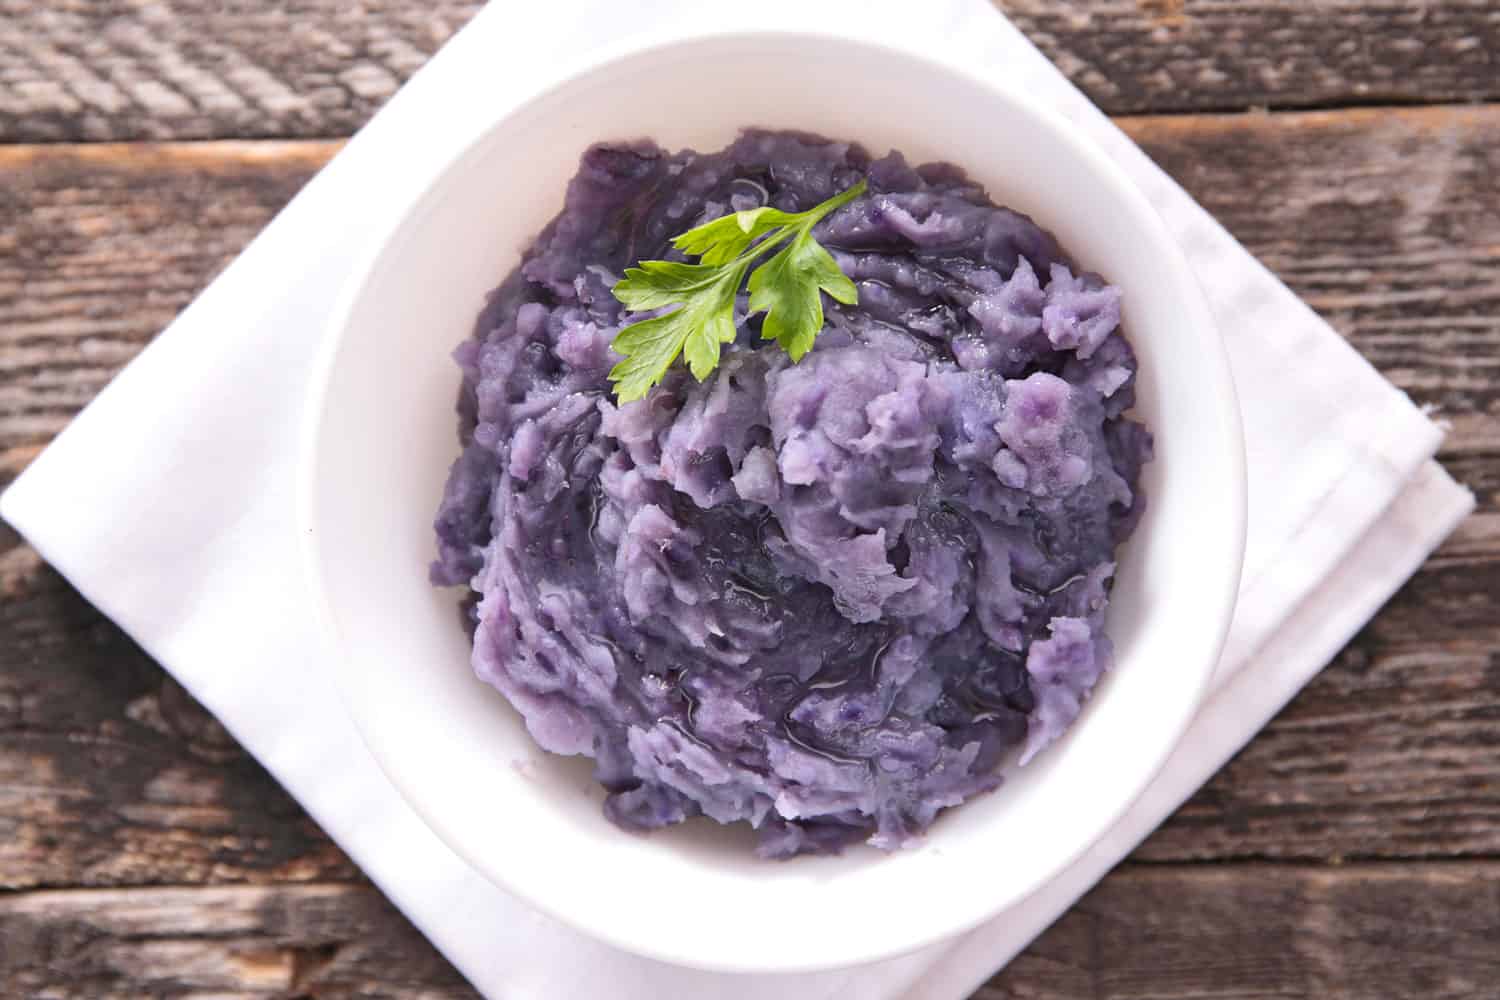 A delicious purple potato mash dish